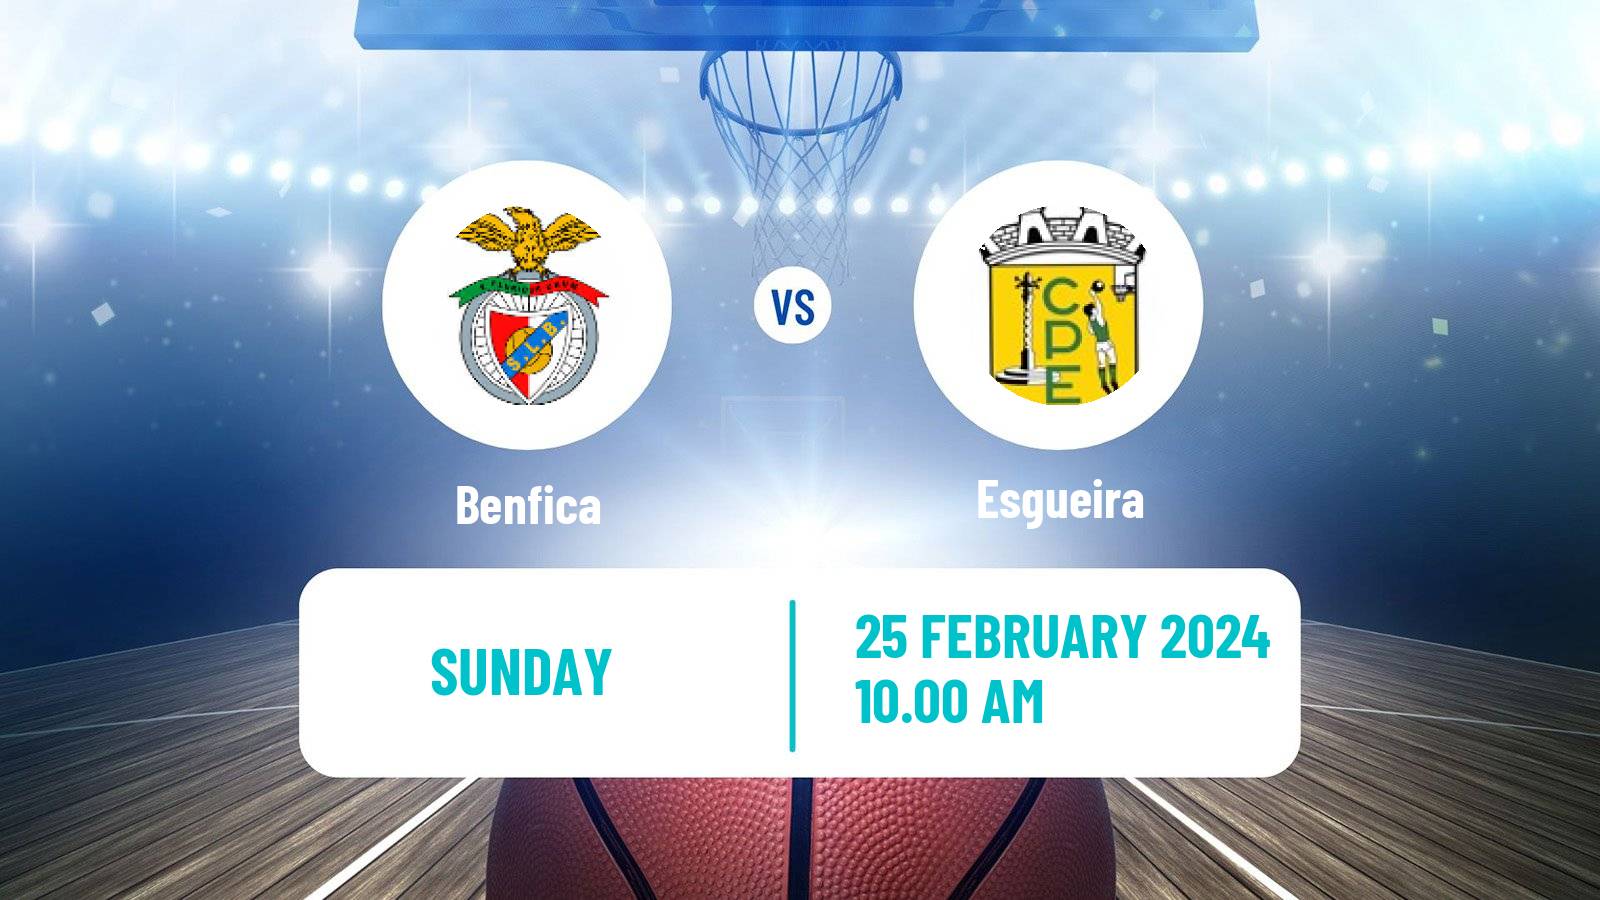 Basketball Portuguese LFB Benfica - Esgueira